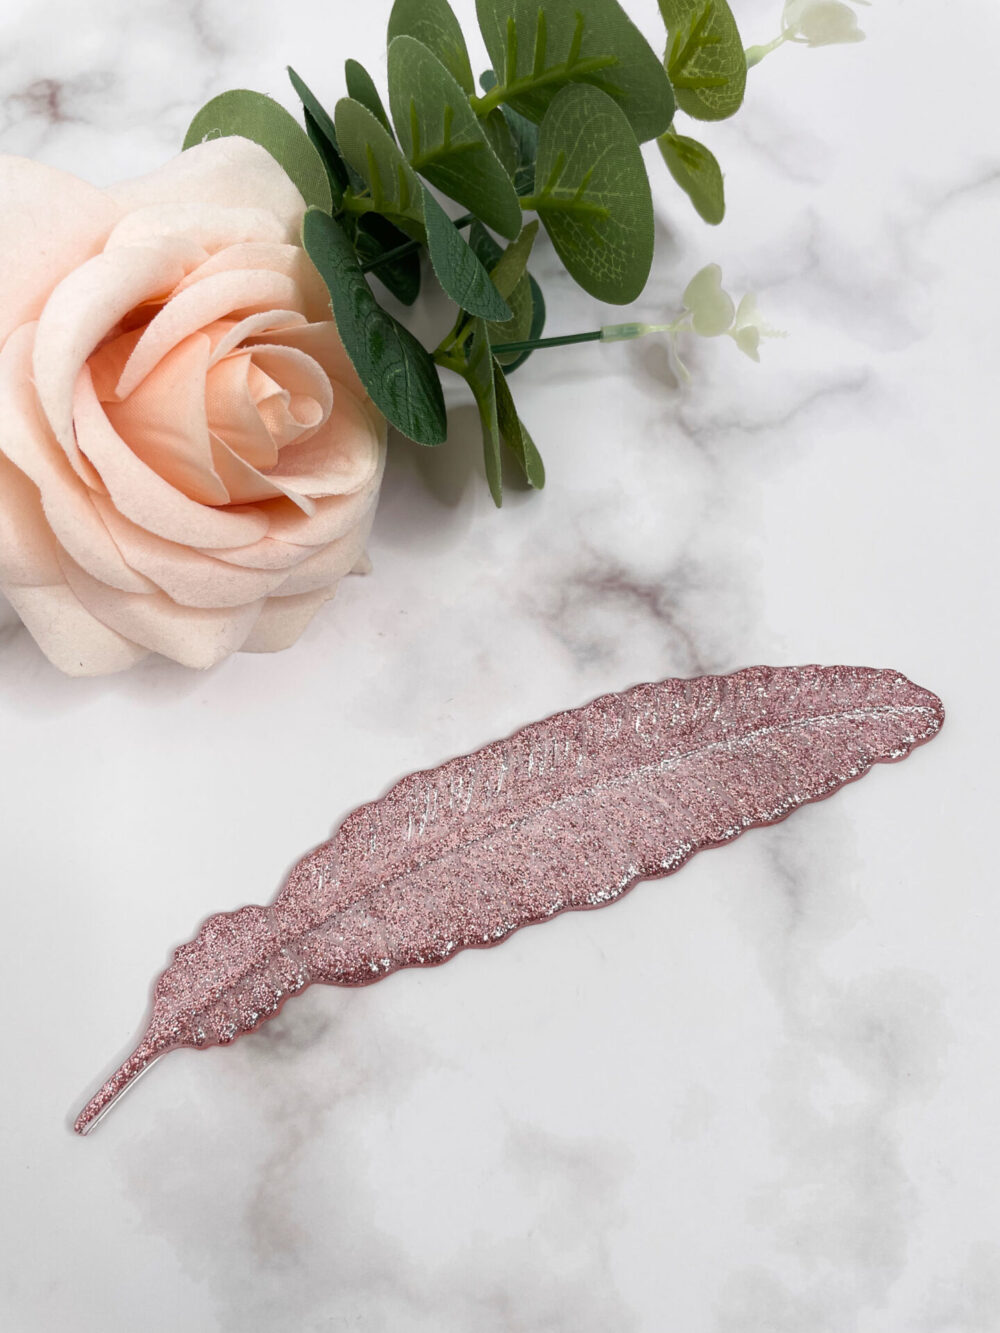 Marque page plume rose paillette - Boutique en ligne d'idées cadeau et de décoration